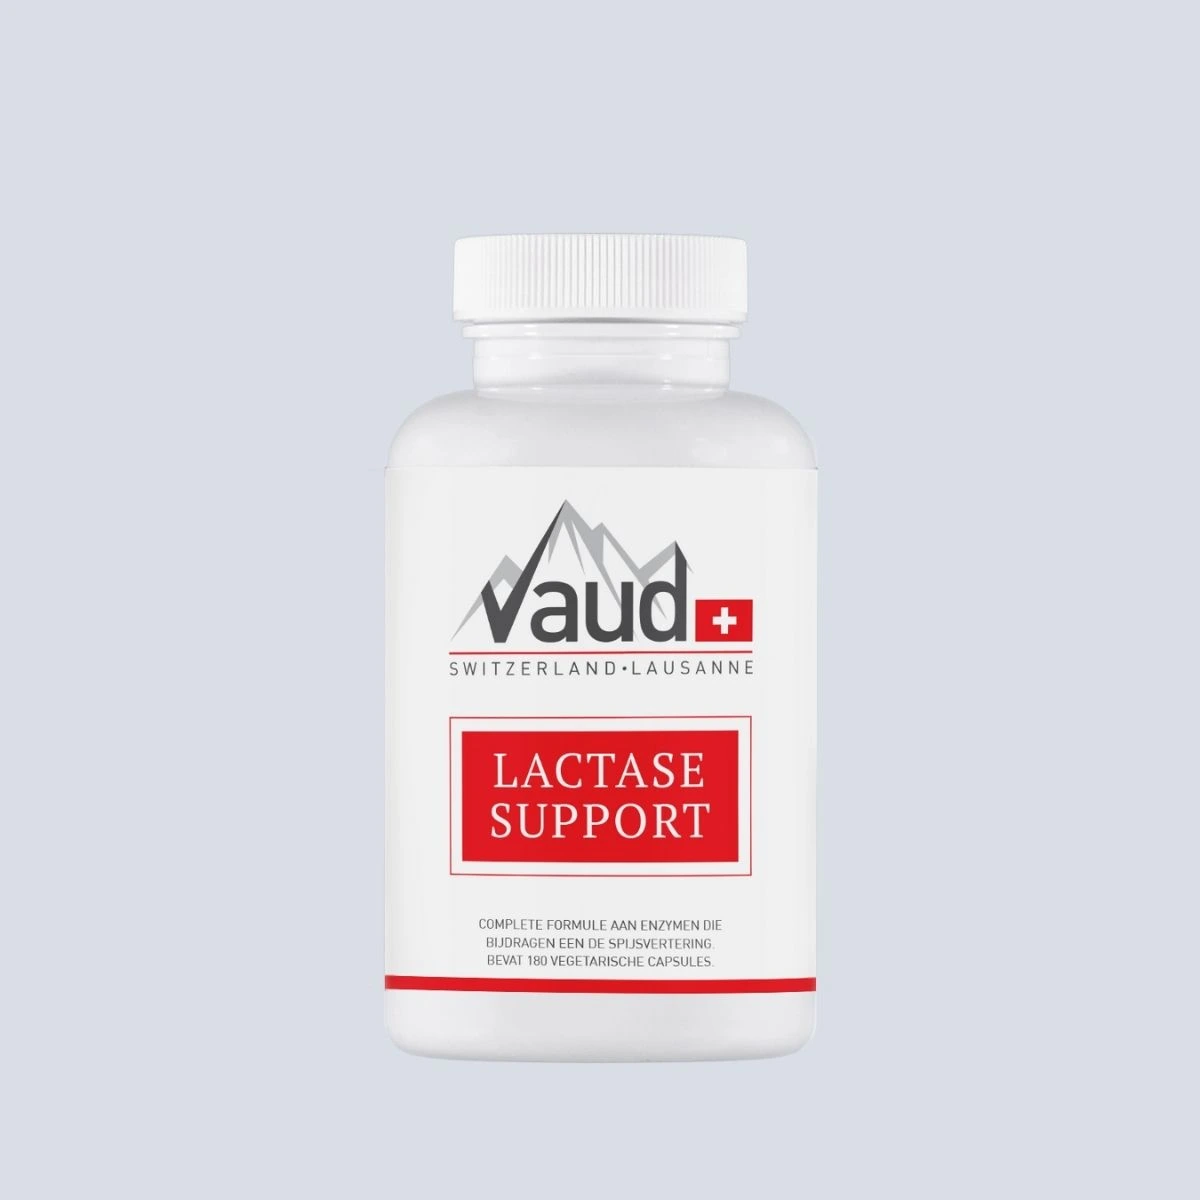 lactase